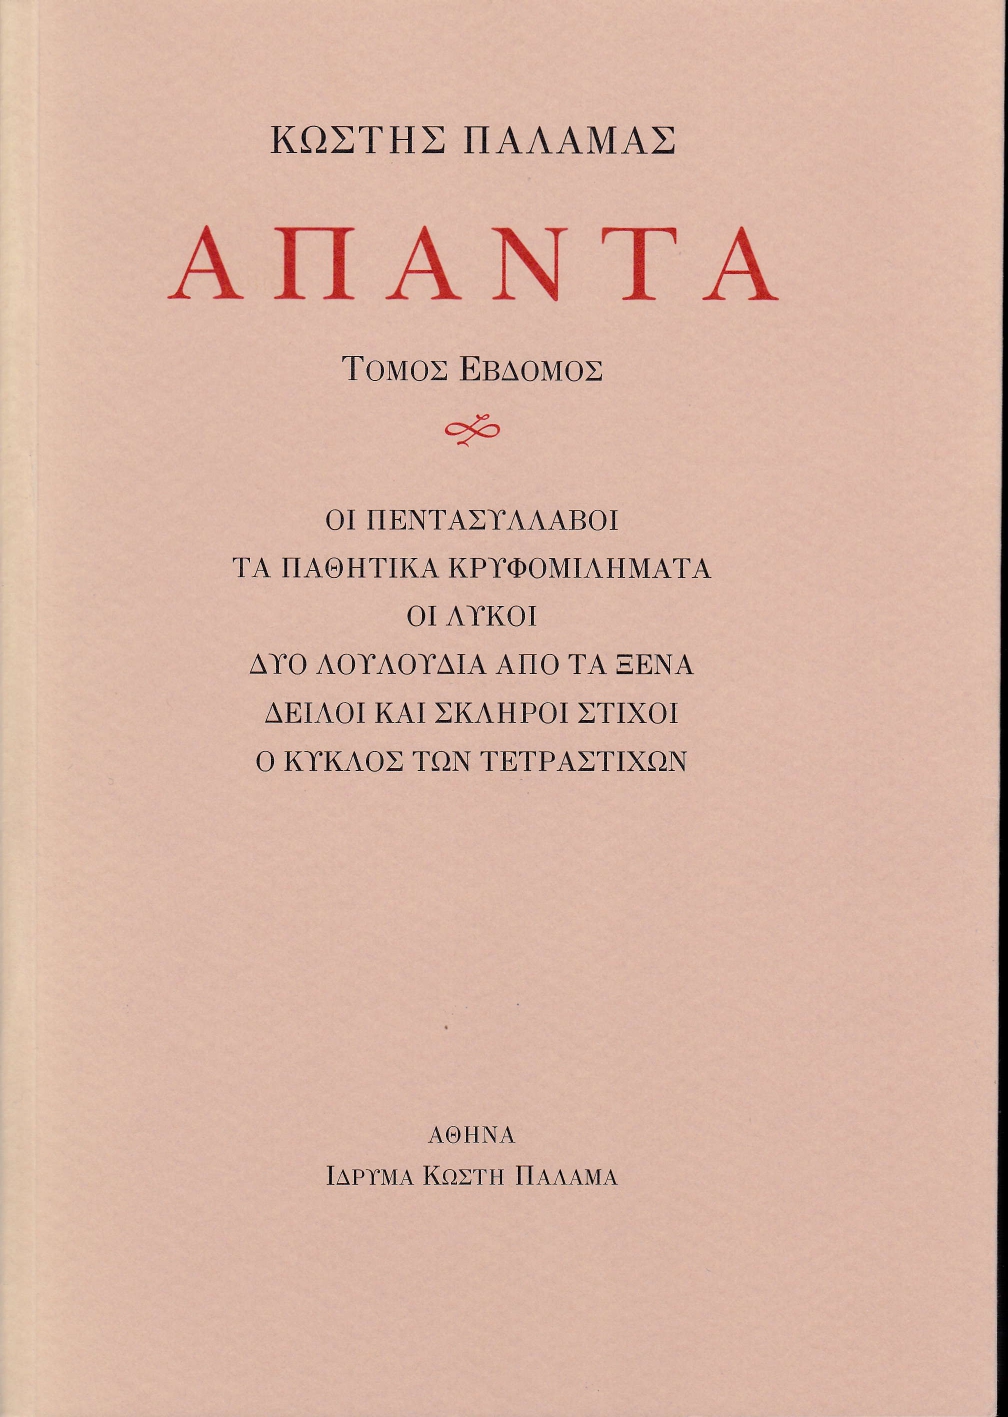 2020, Κασίνης, Κωνσταντίνος Γ. (Kasinis, K. G.), Άπαντα VII, Οι πεντασύλλαβοι. Τα παθητικά κρυφομιλήματα. Οι λύκοι. Δύο λουλούδια από τα ξένα. Δειλοί και σκληροί στίχοι. Ο κύκλος των τετραστίχων., Παλαμάς, Κωστής, 1859-1943, Ίδρυμα Κωστή Παλαμά